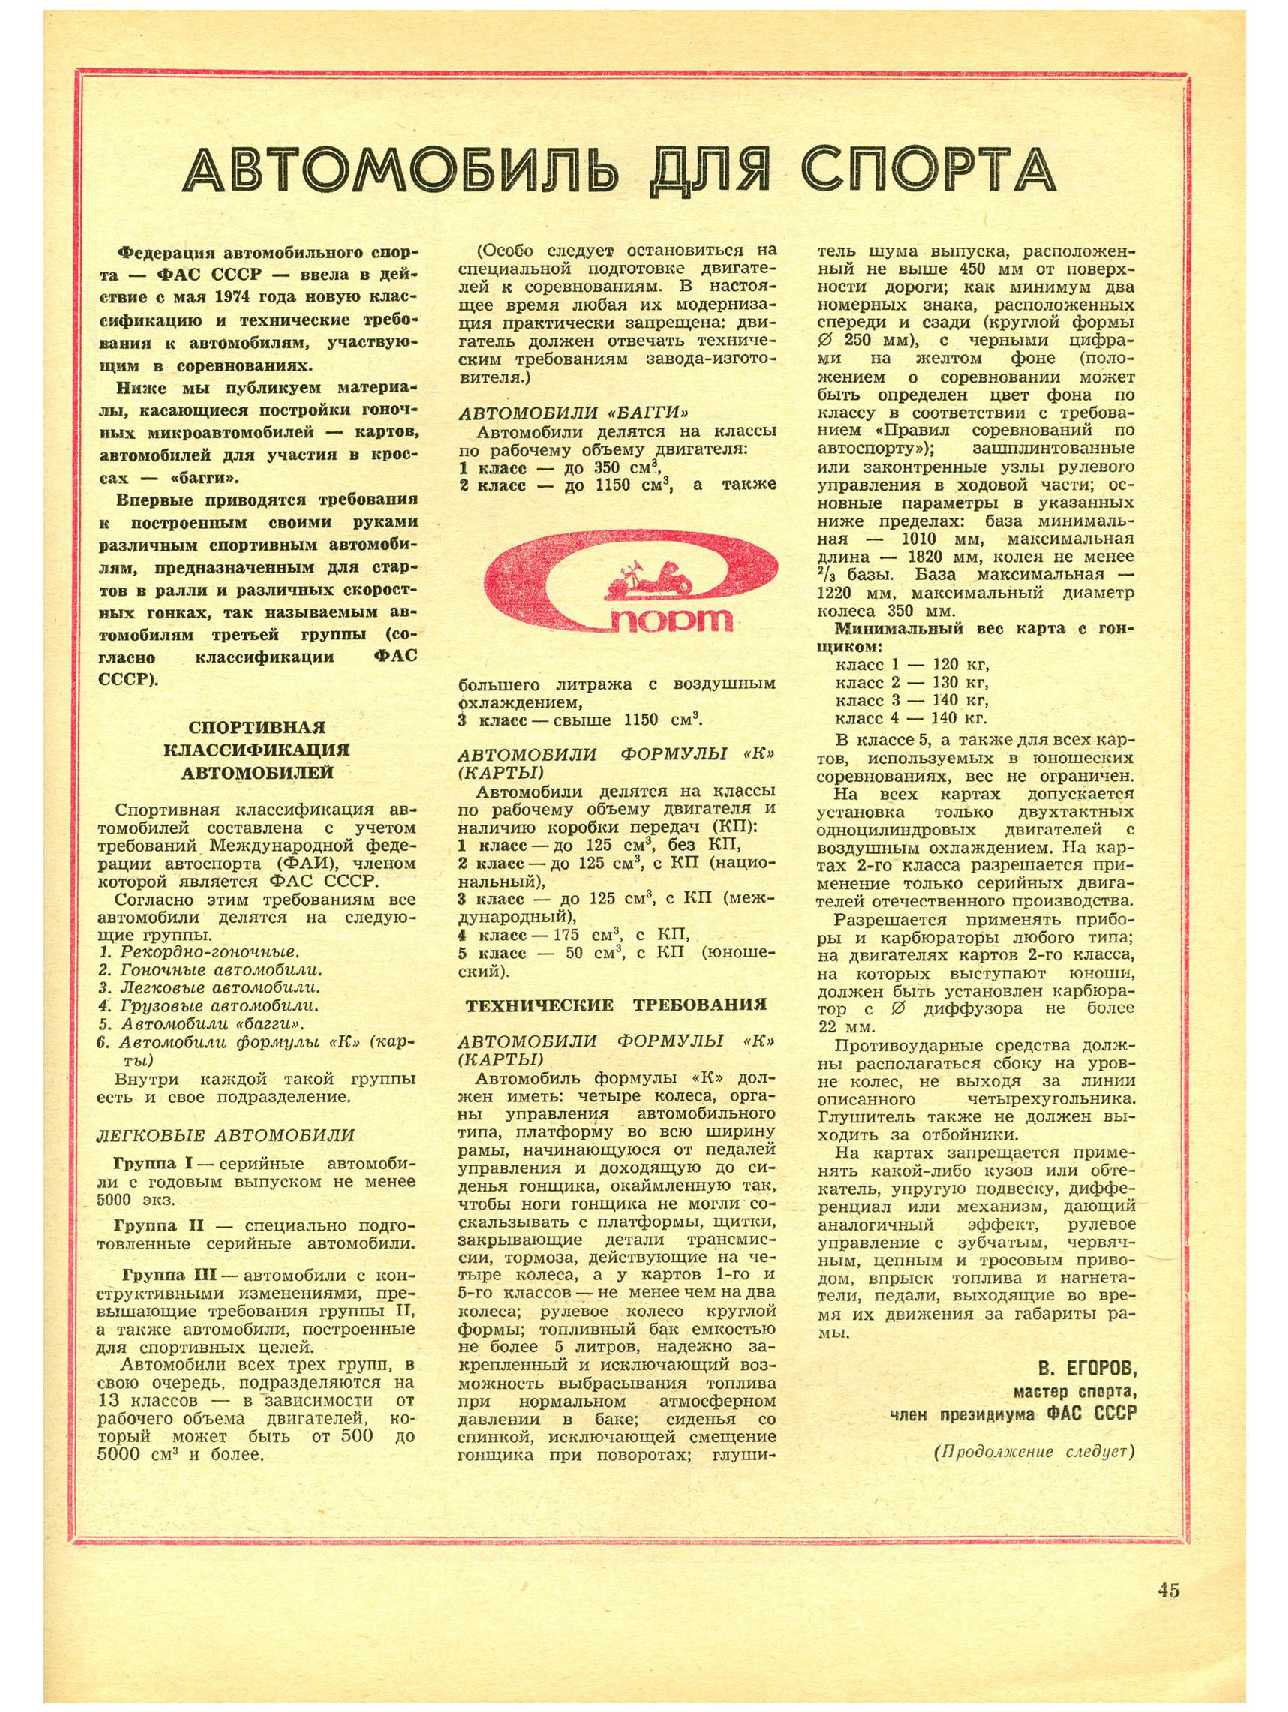 МК 5, 1974, 45 c.